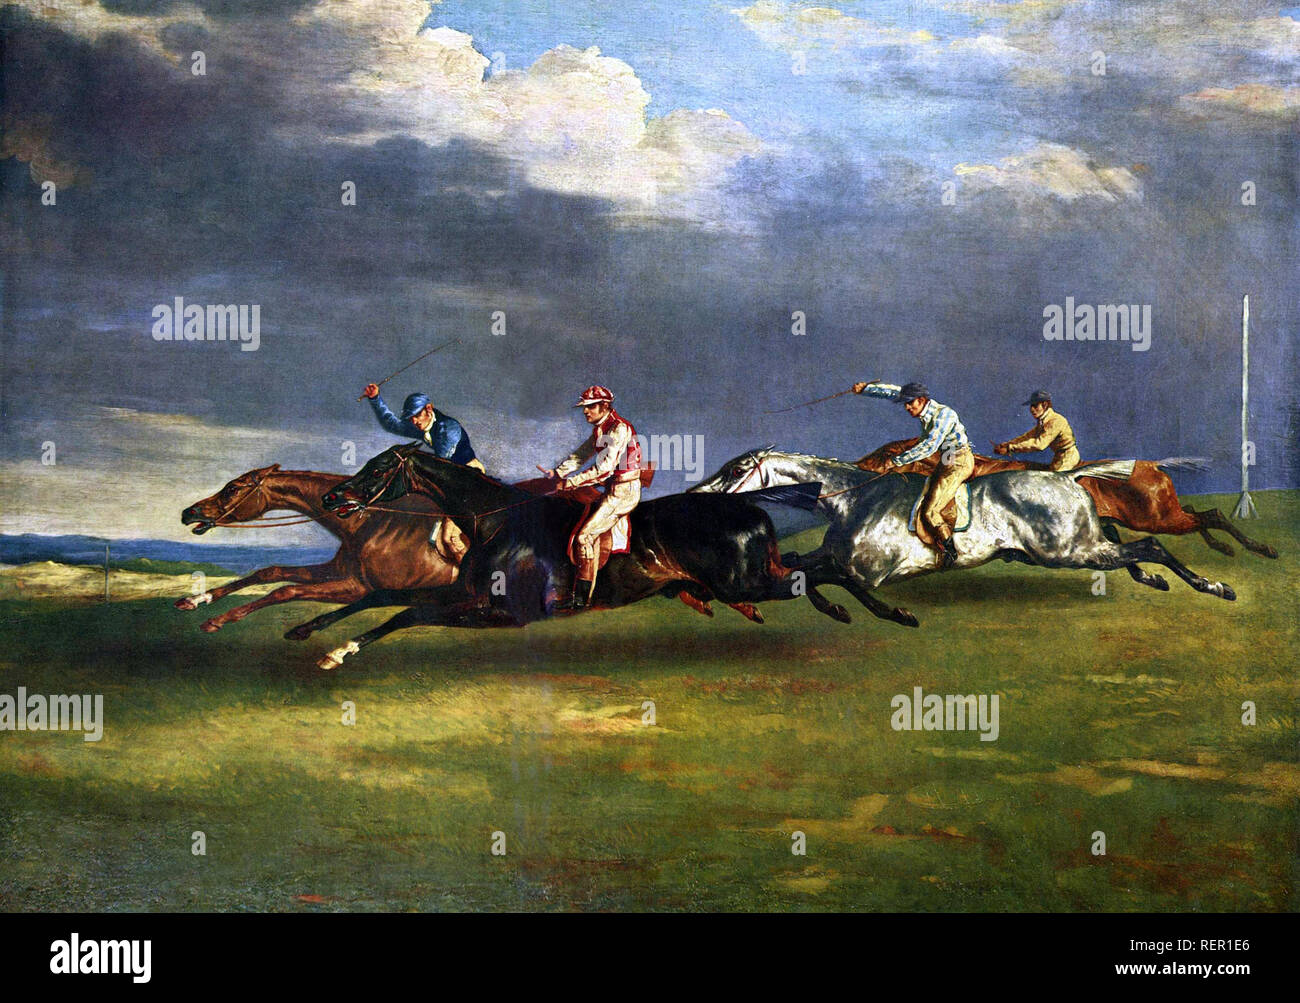 Il Derby di Epsom, 1821 da Théodore Géricault il 1821 Derby a Epsom, o corsa di cavalli che mostra il Derby di quell'anno Foto Stock